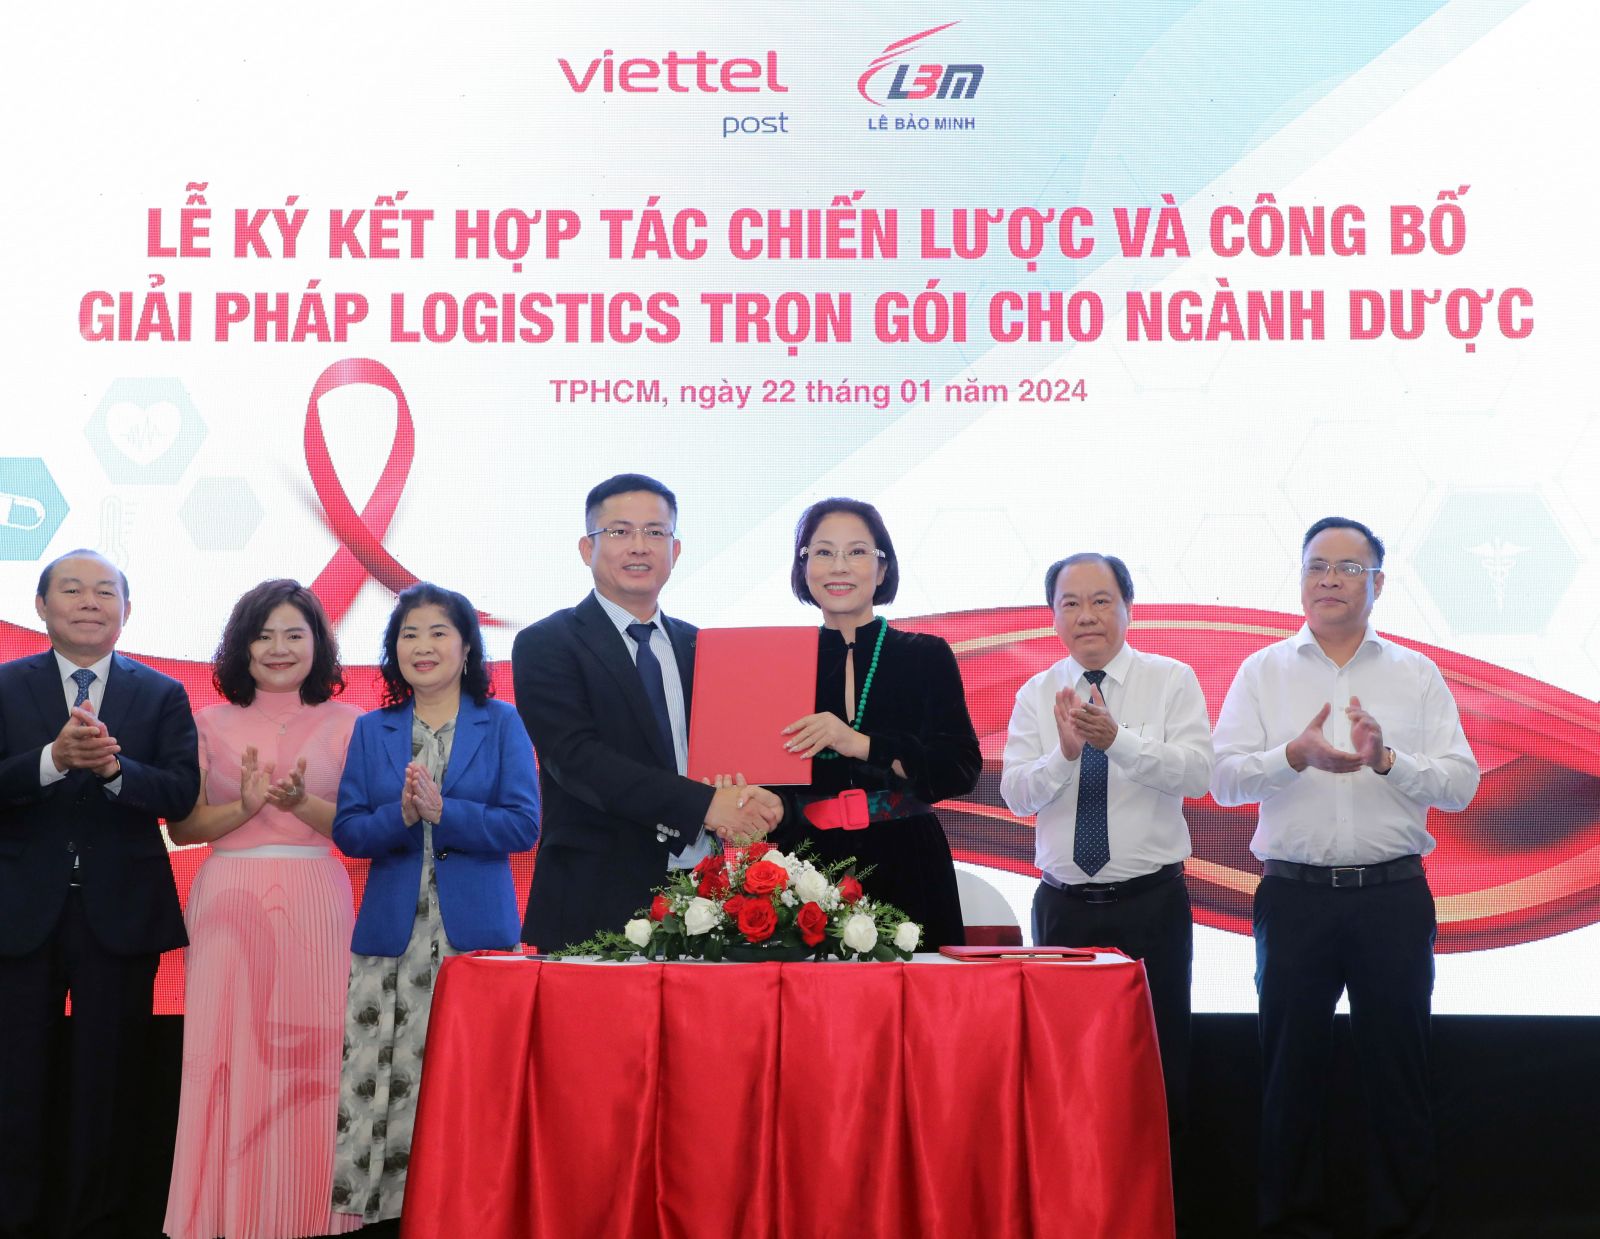 Tổng Công ty Cổ phần Bưu chính Viettel (Viettel Post) và Công ty Cổ phần Lê Bảo Minh ký kết hợp tác chiến lược và công bố “Giải pháp Logistics trọn gói cho ngành Dược”. Đây là lần đầu tiên tại Việt Nam có một bộ giải pháp chuyên biệt toàn trình đáp ứng được các tiêu chuẩn của ngành.